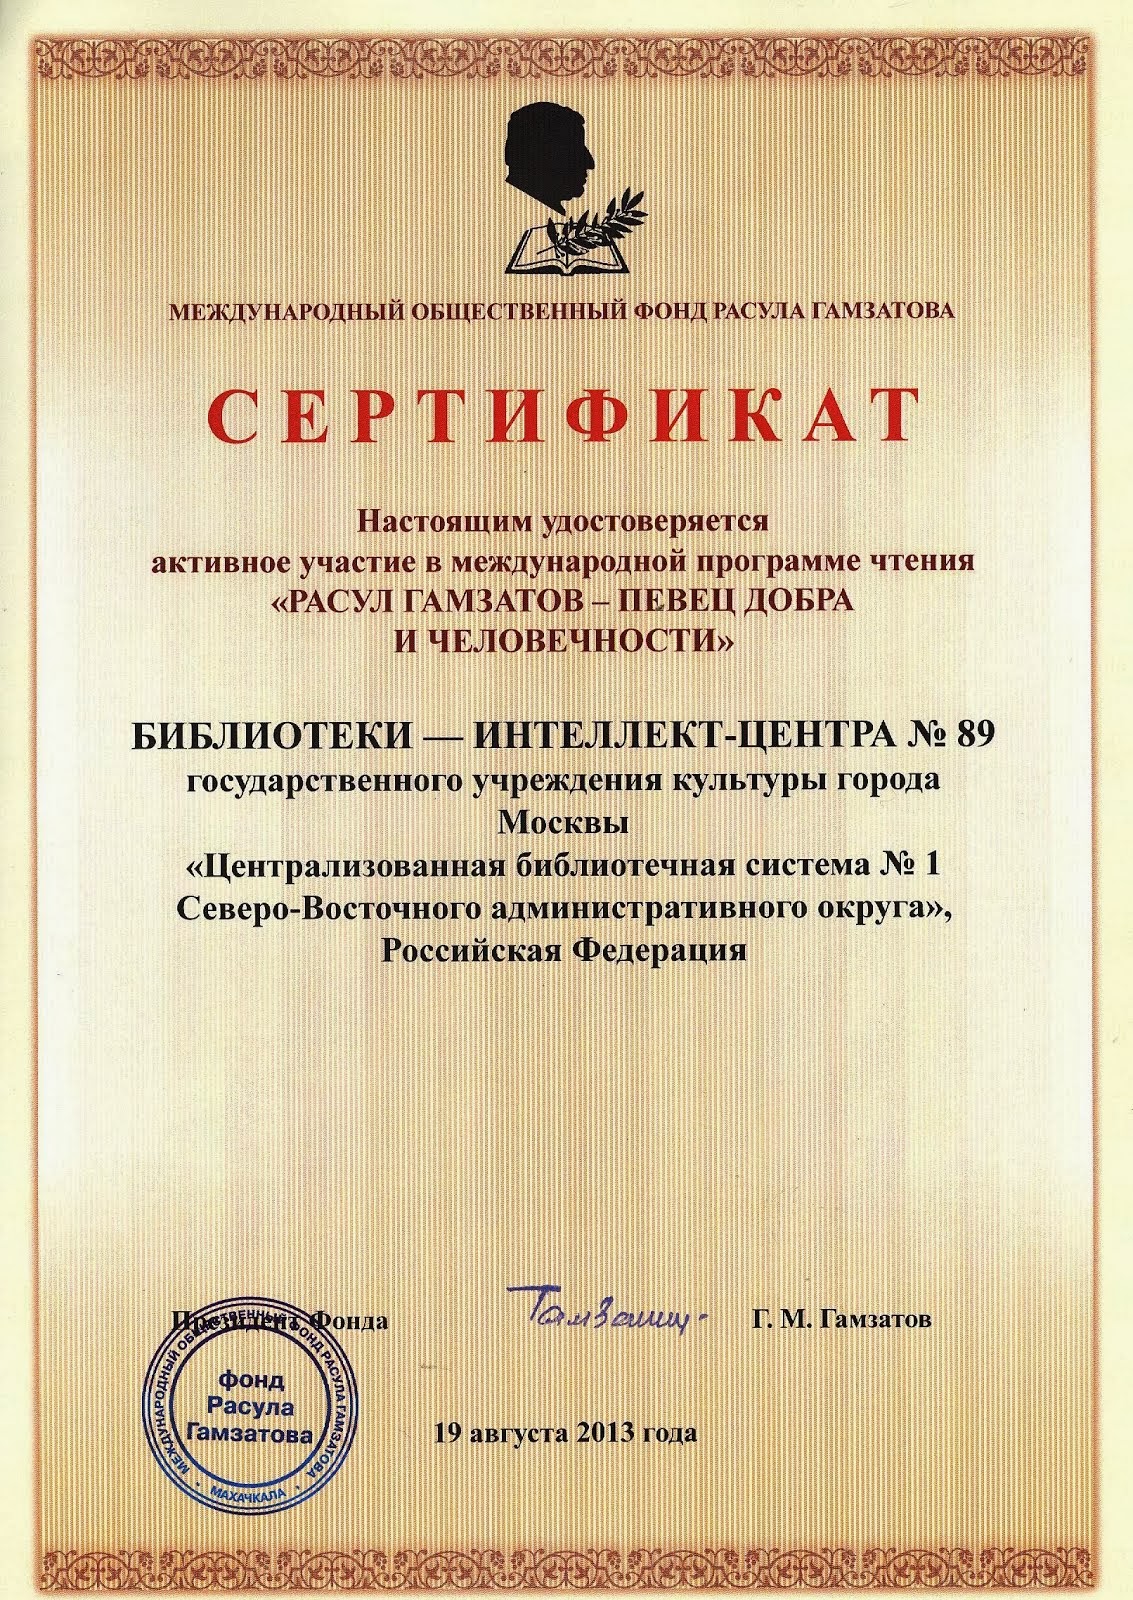 Сертификат участника программы чтения "Расул Гамзатов - певец добра и человечности". 2013